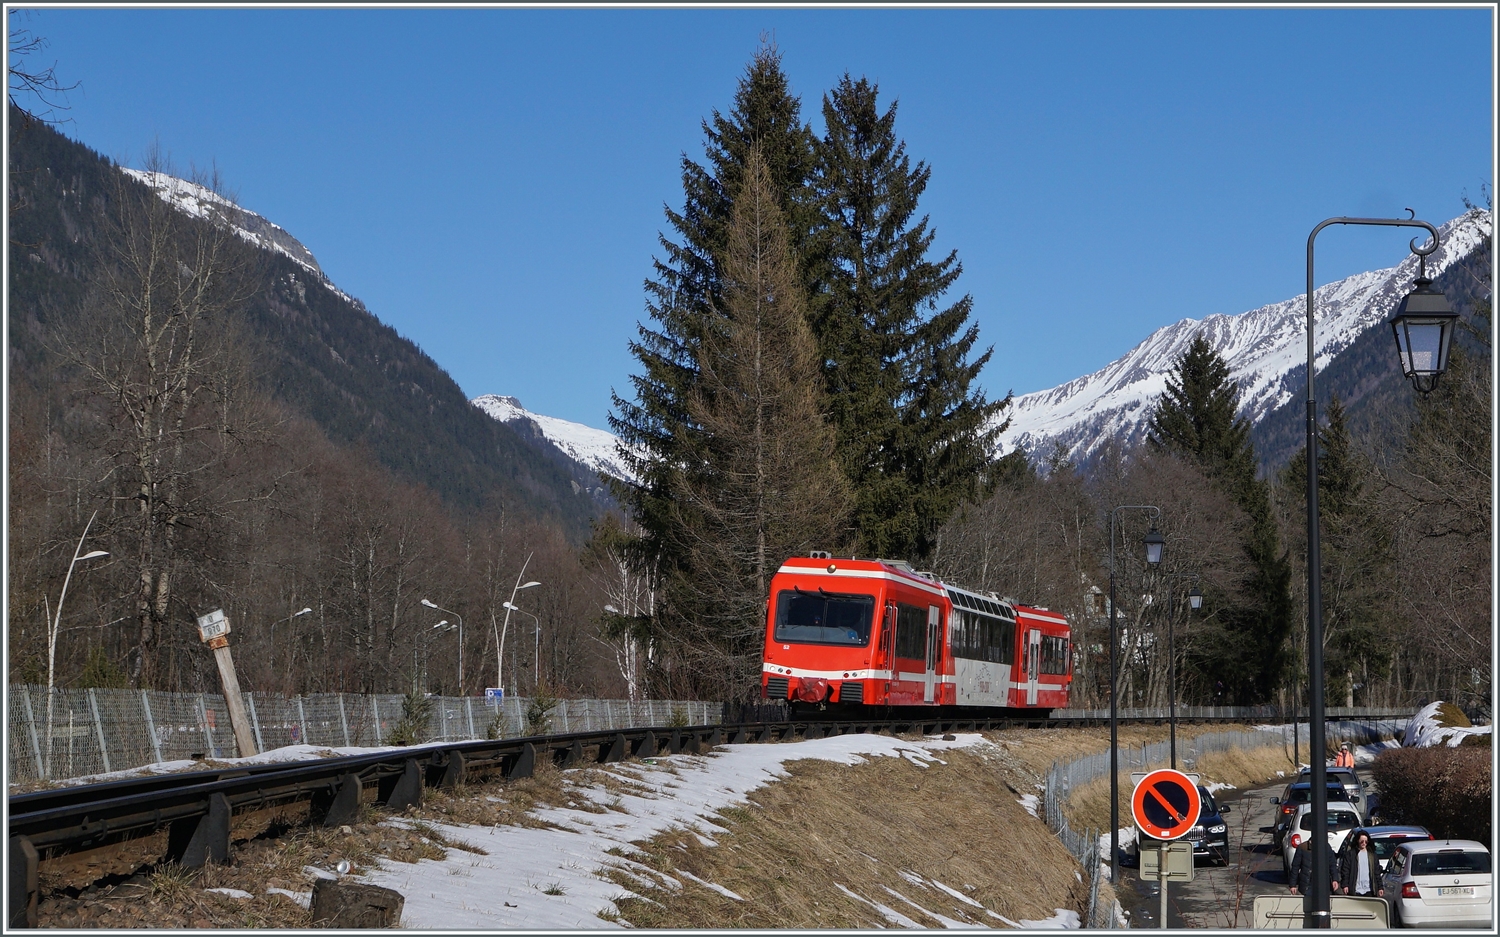 Der SNCF Z 850 052 erreicht als TER von Vallorcine nach St-Gervais Les Bains Le Fayette nun Chamonix.

14. Februar 2023 